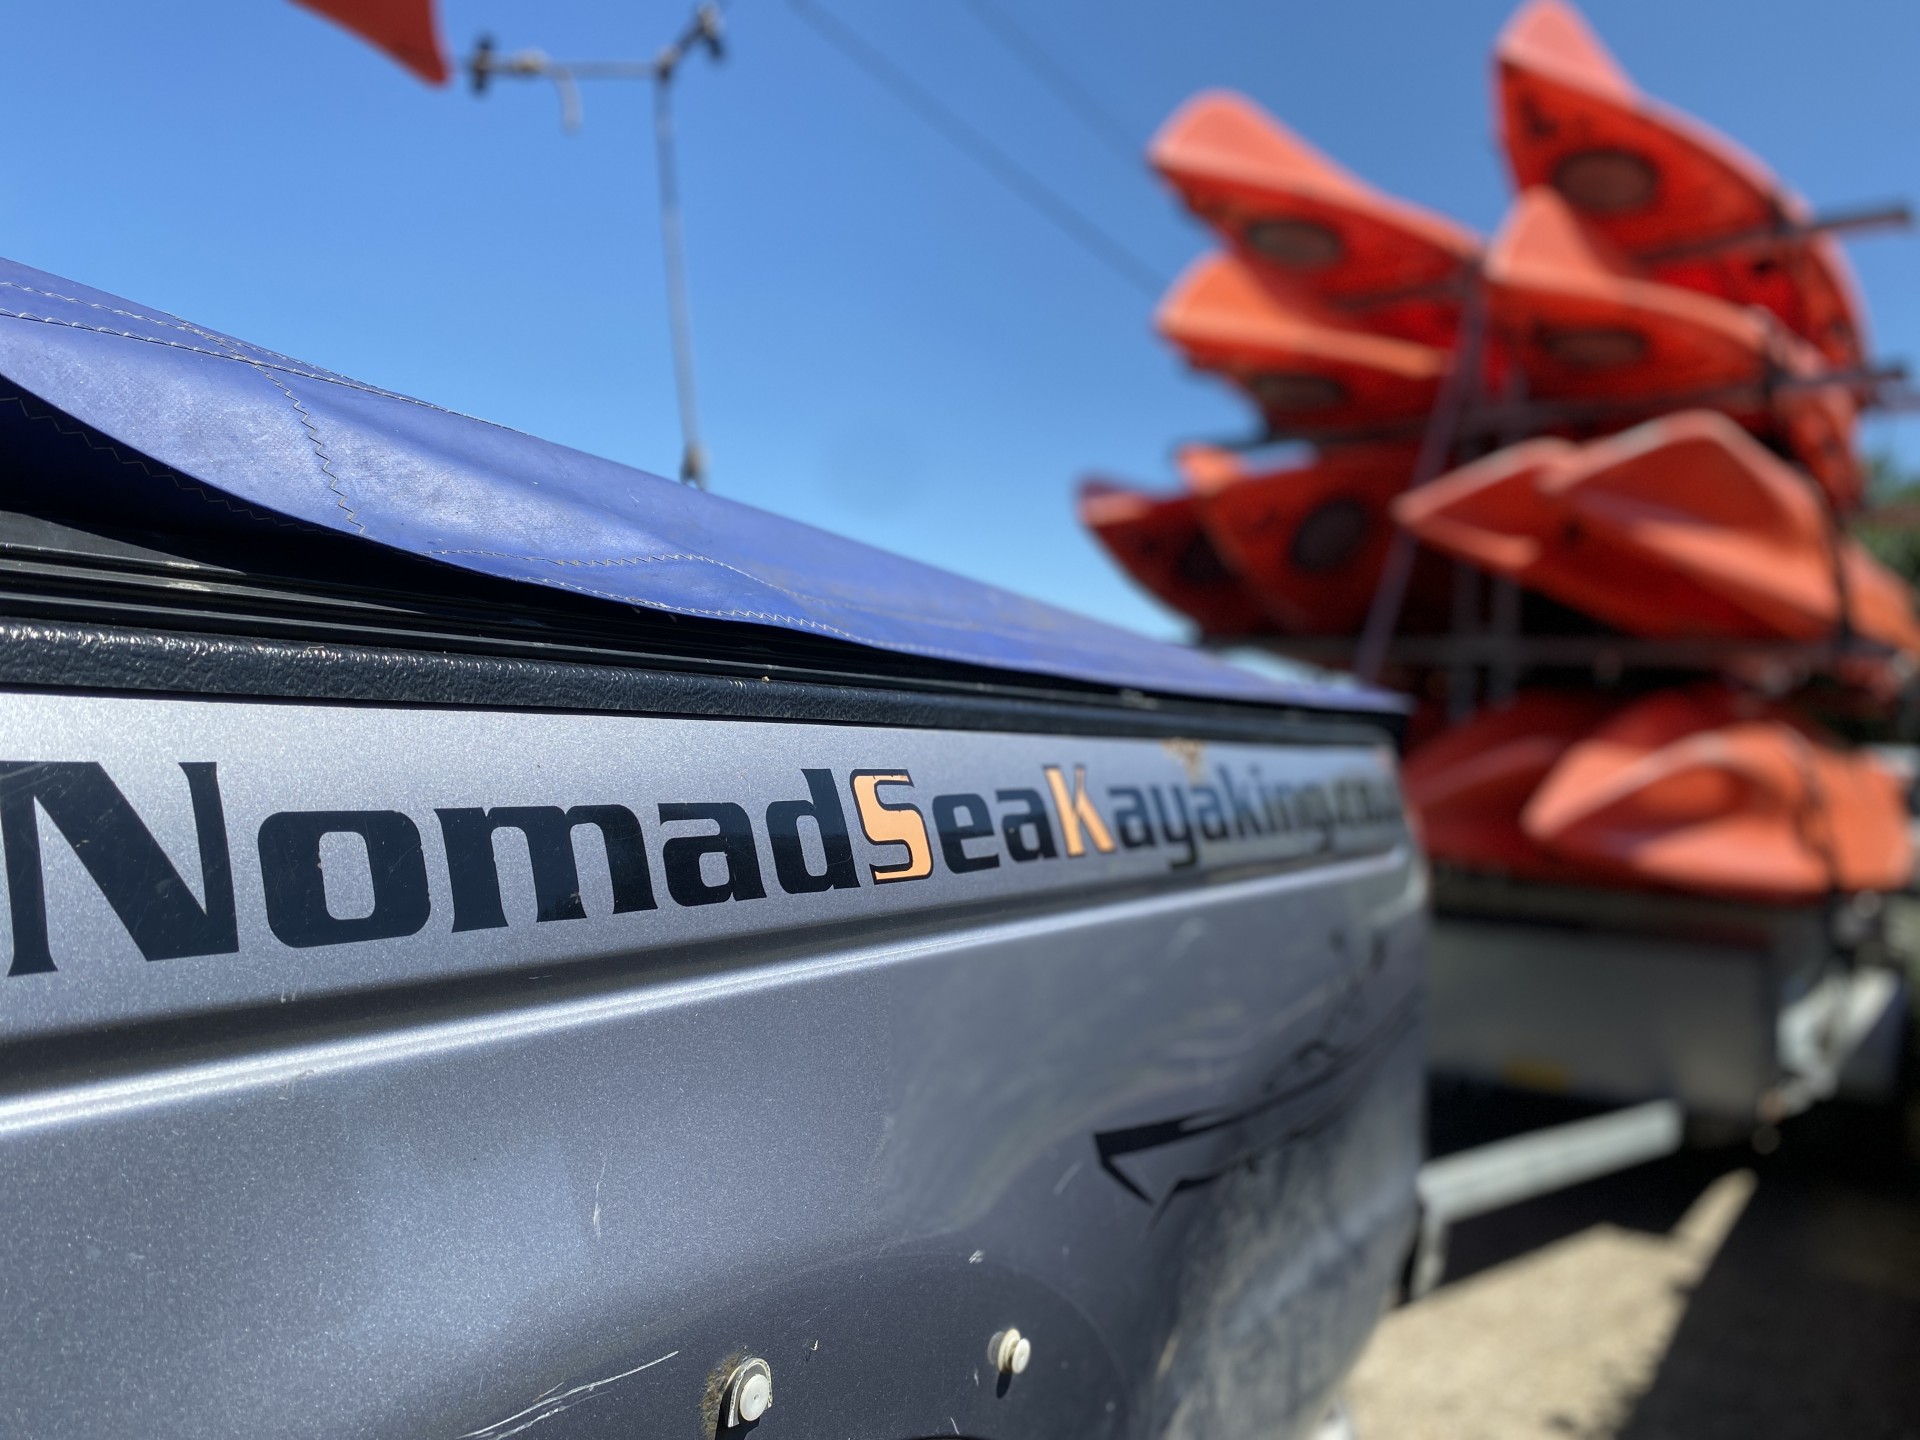 NOMAD Sea Kayaking kayaks on trailer.